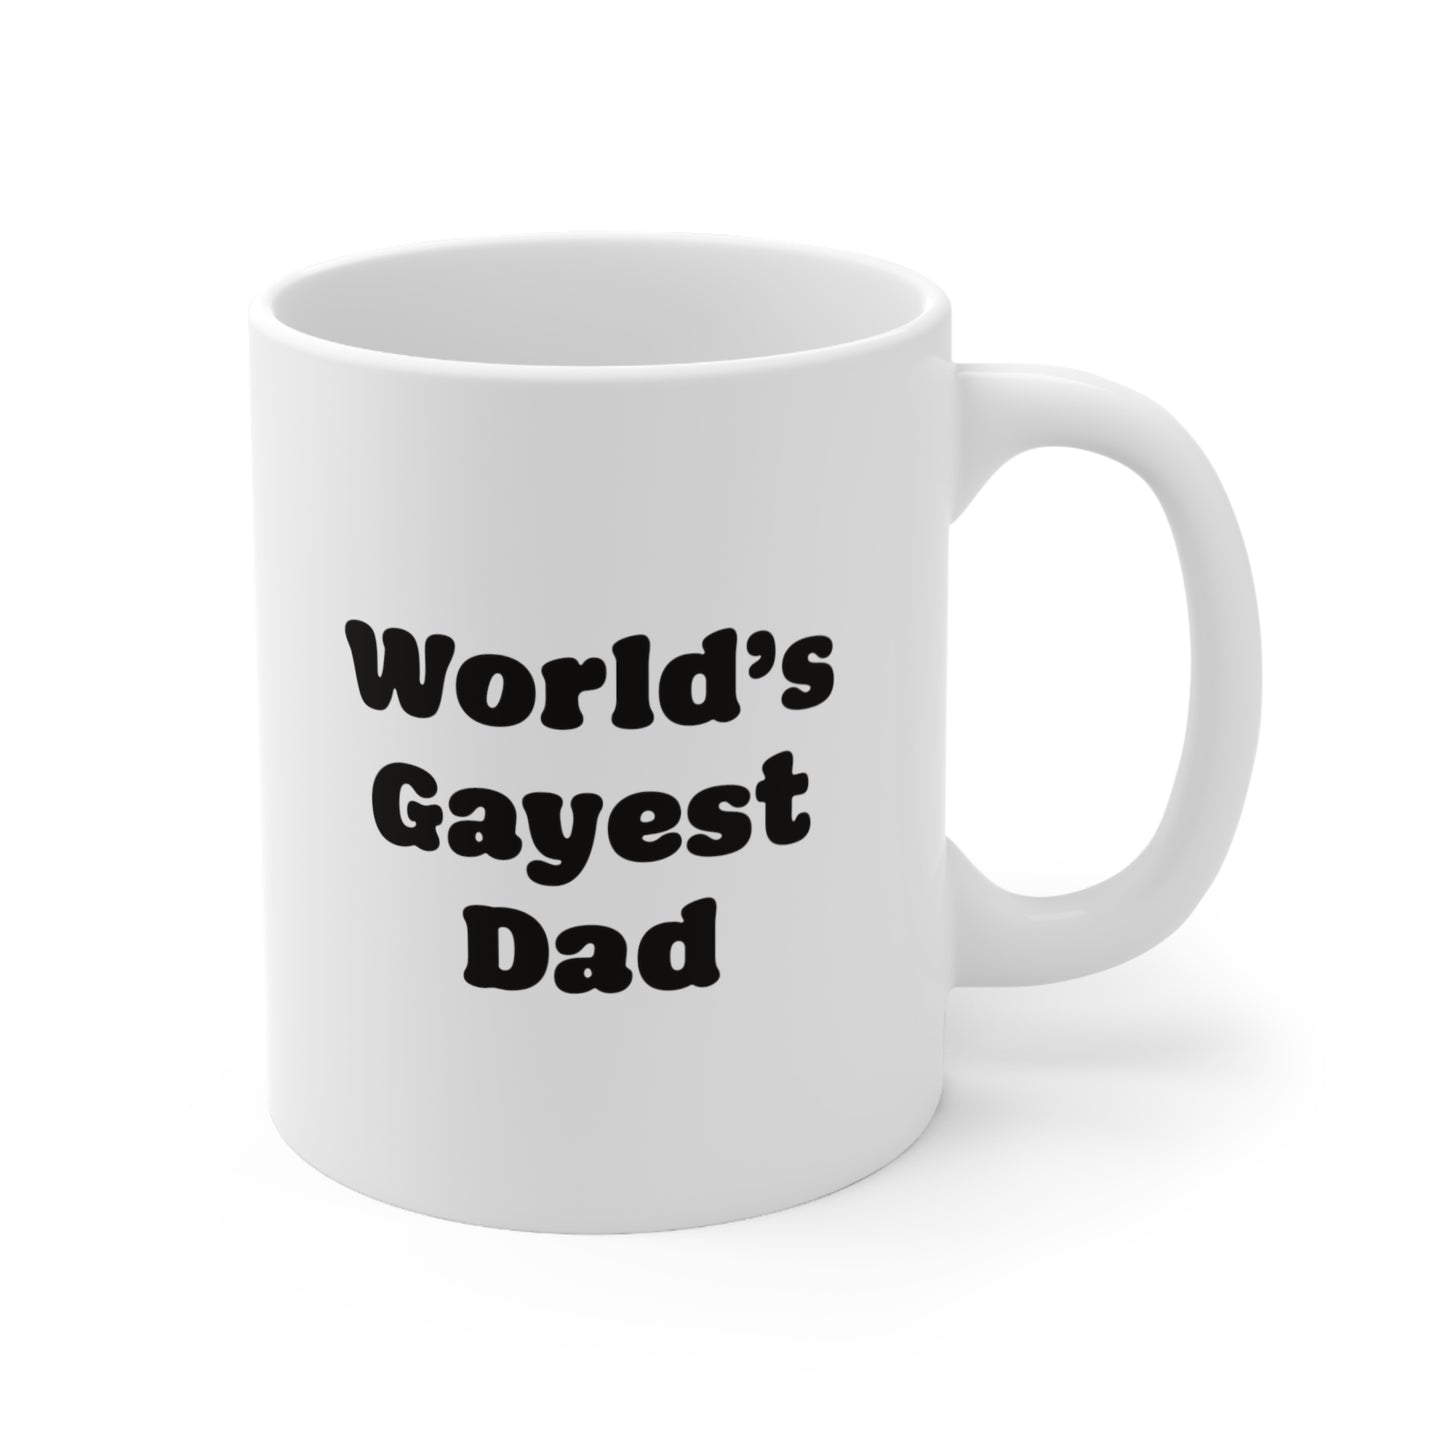 World's Gayest Dad Coffee Mug 11oz